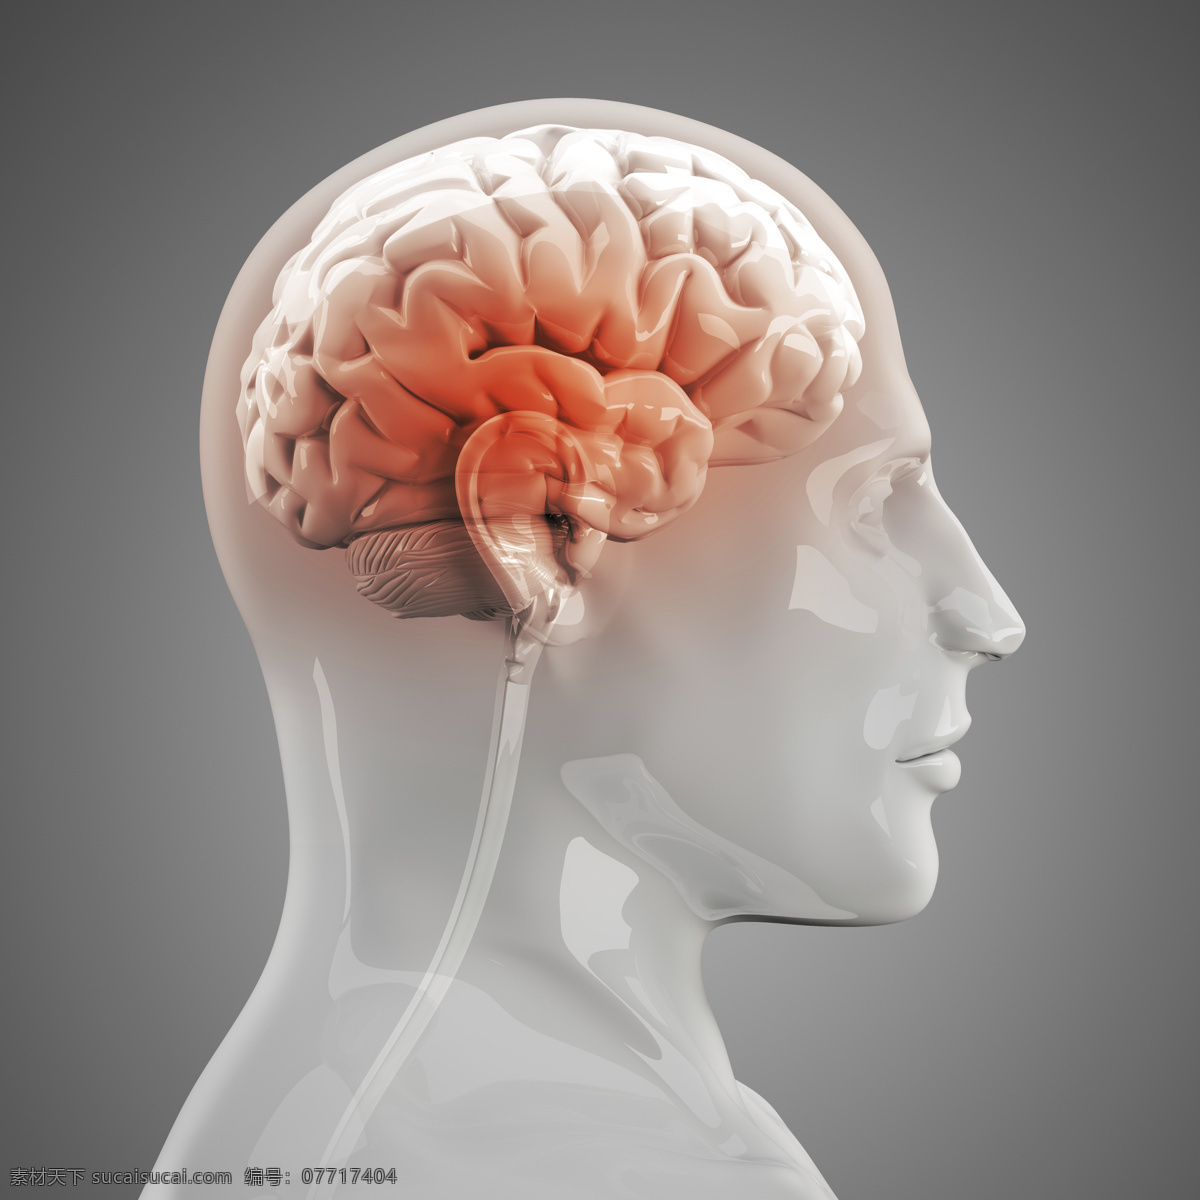 人体 左 脑 x 光 透视图 x光 图像 医疗主题 左脑 大脑 医疗护理 现代科技